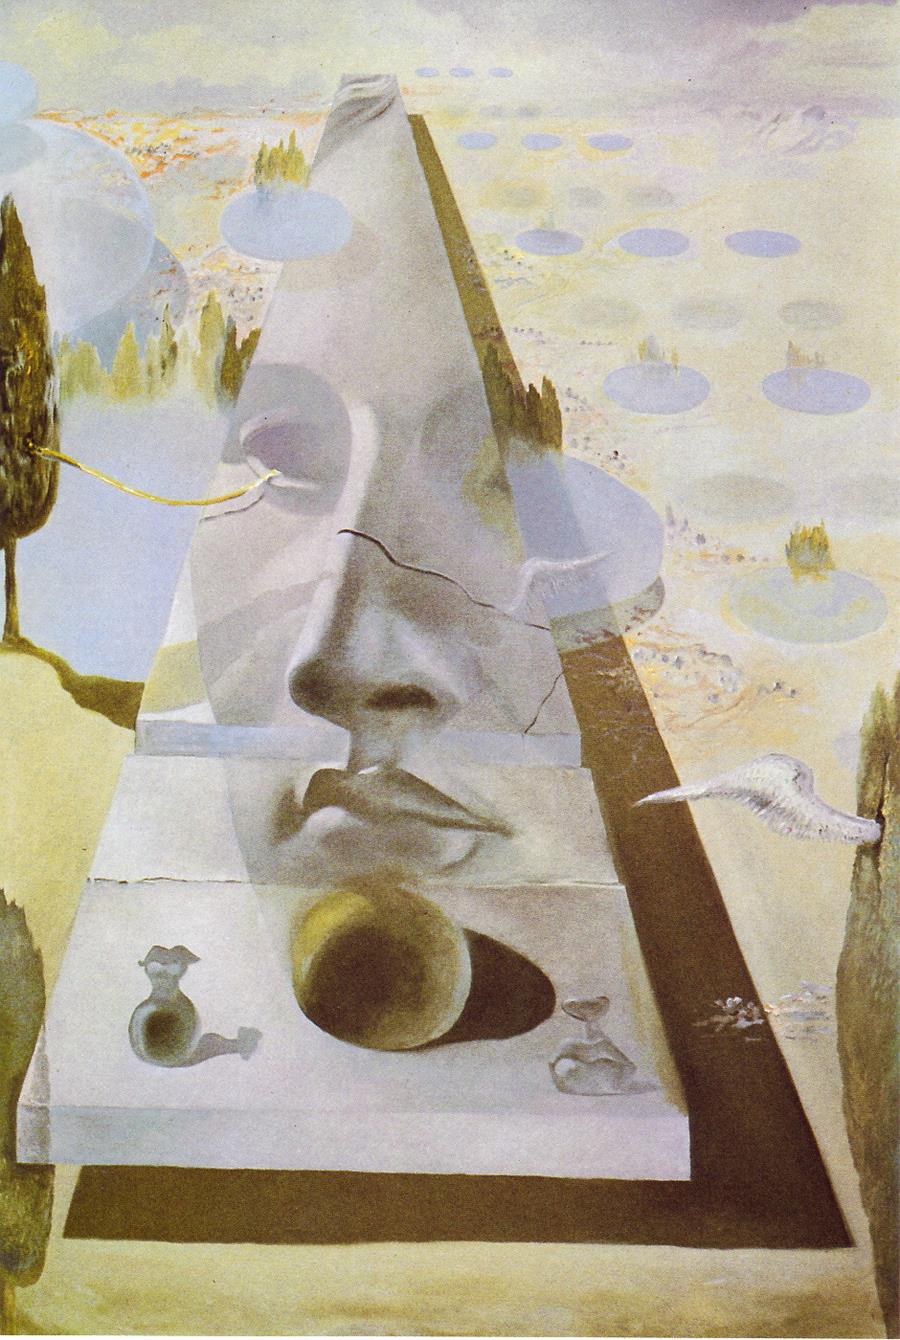 Póster "Aparición del rostro de Afrodita de Cnido en un paisaje", 1981 | 122200000  | Salvador Dalí | Tienda online Dalí Figueres | Librería Surrealista